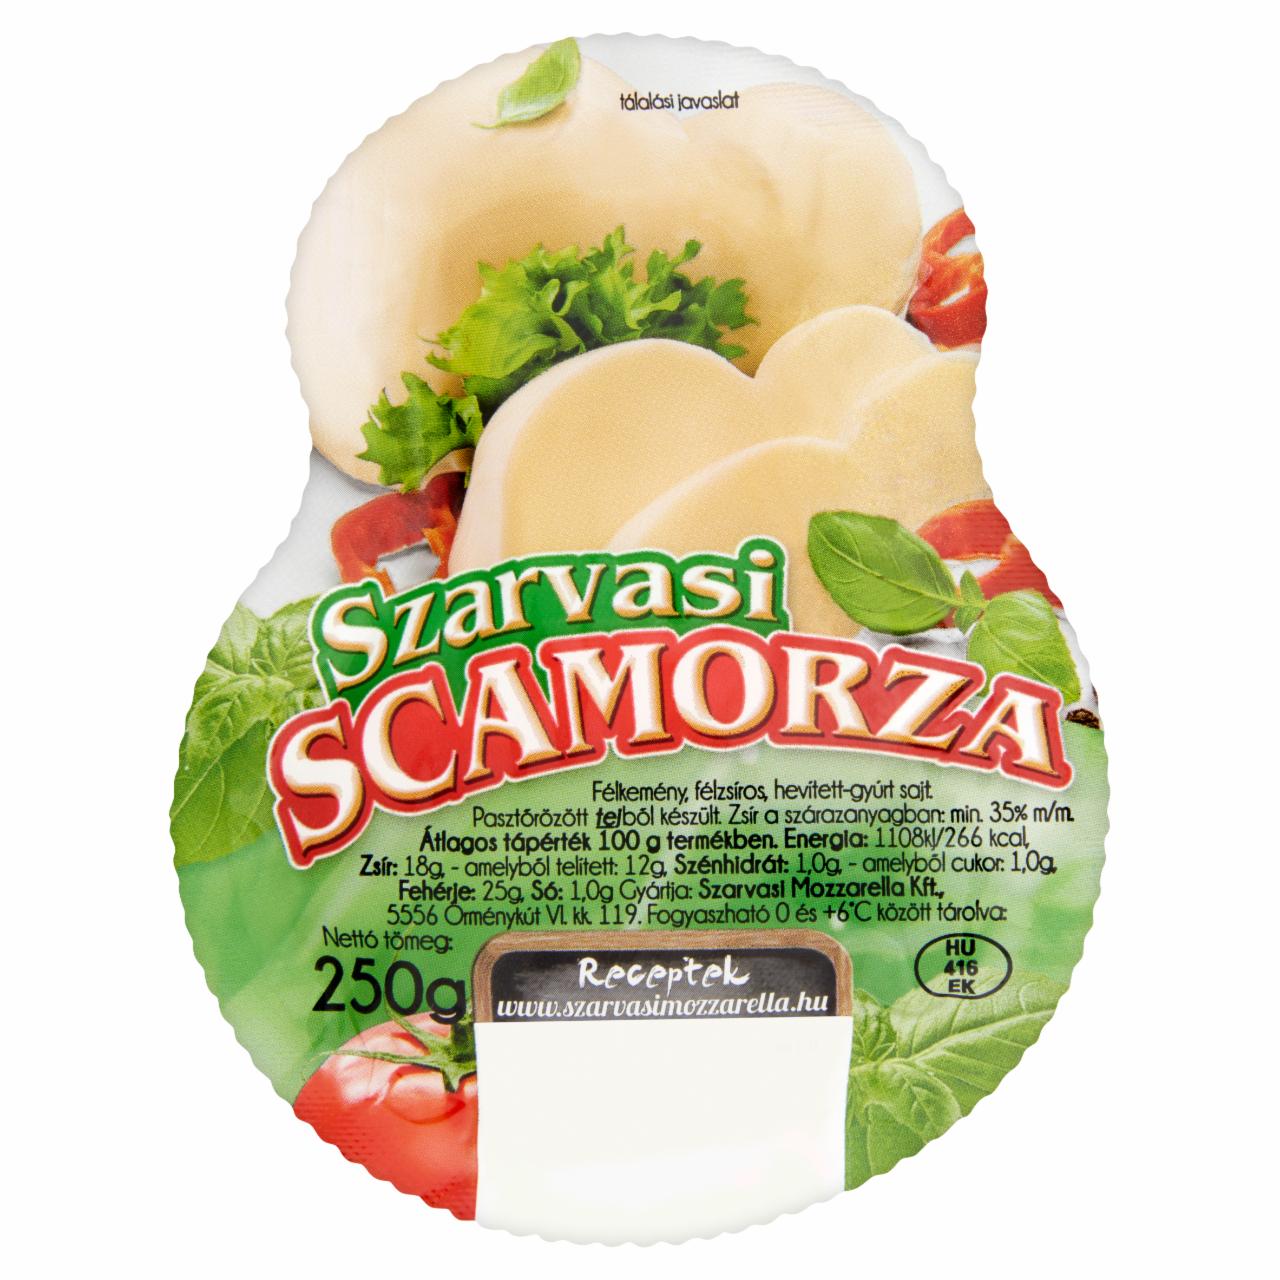 Képek - Szarvasi Scamorza félkemény, félzsíros sajt 250 g